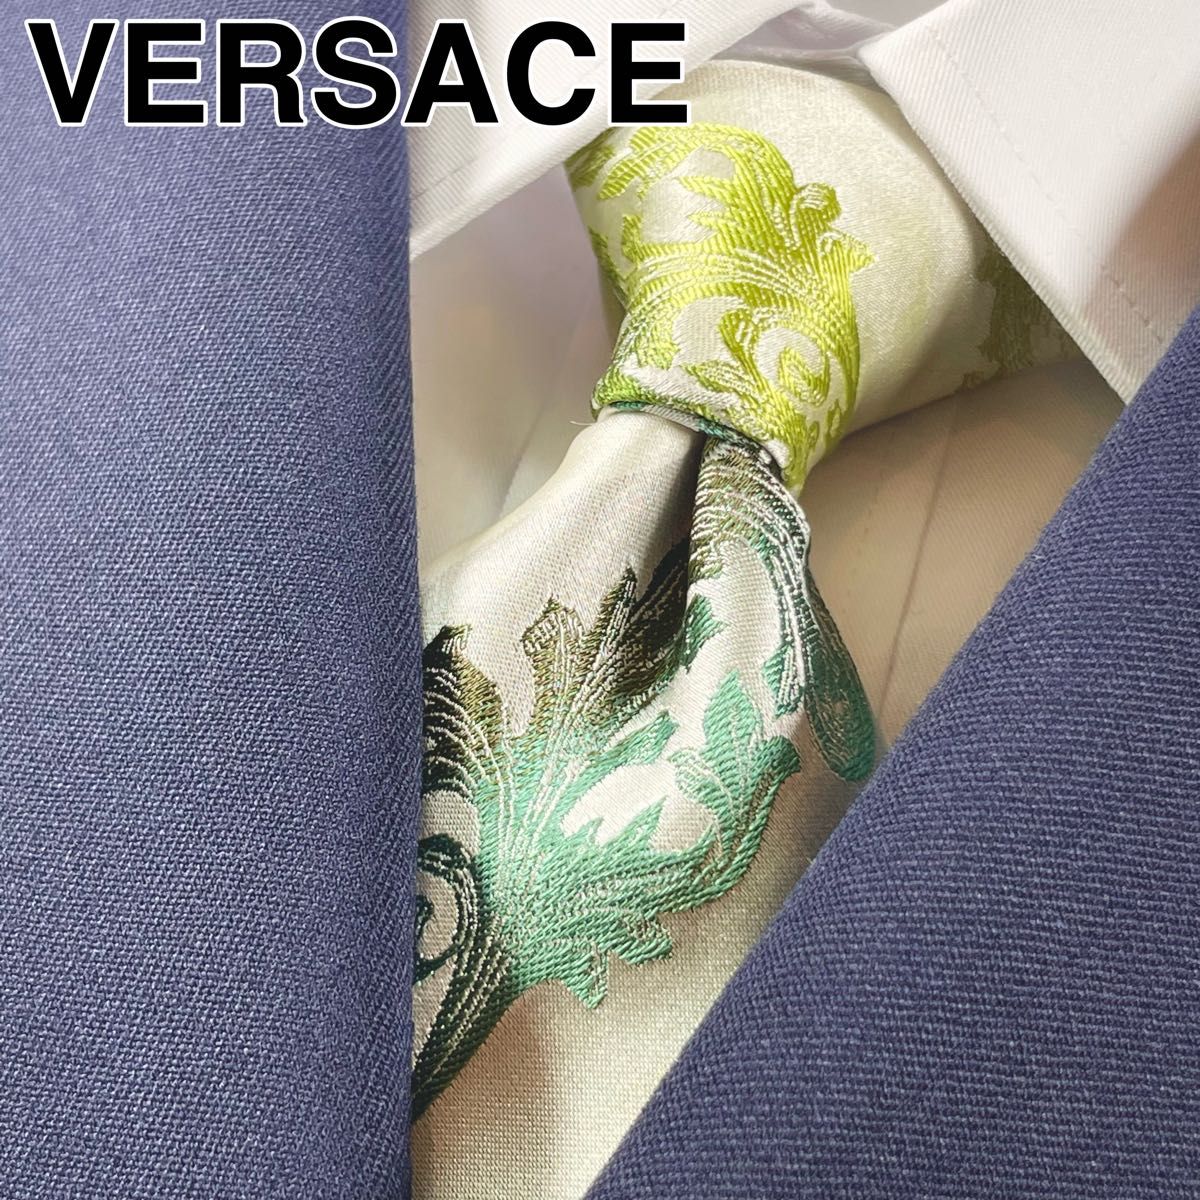 ヴェルサーチェ(VERSACE) ブランド ネクタイ 光沢 ストライプ バロック 柄 イタリア製 シルク アイボリー シルバー 緑